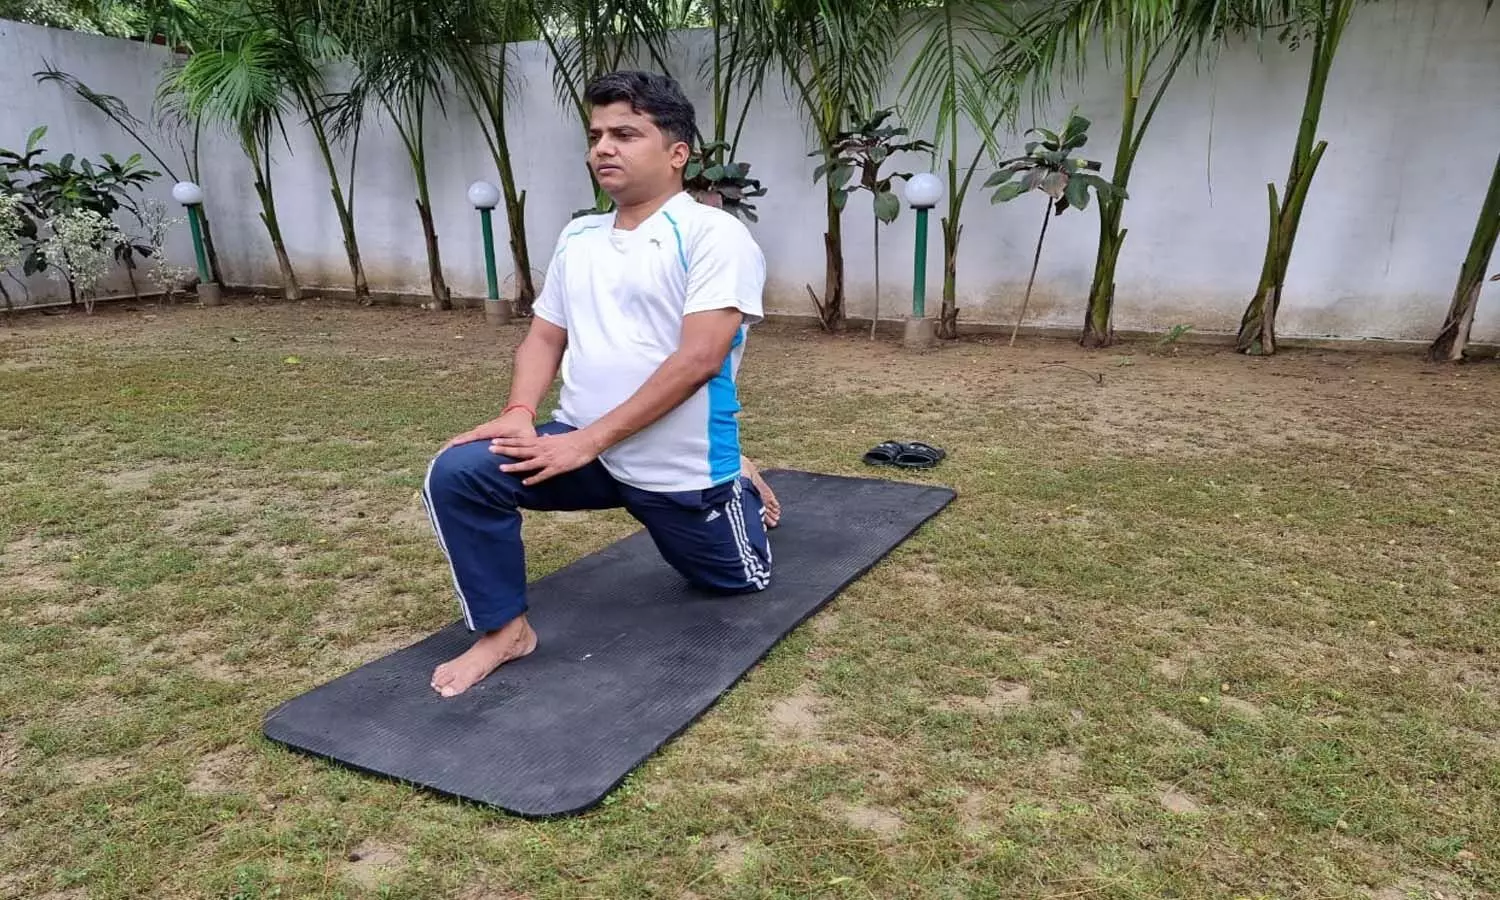 Yoga Day 2021: योग तन मन दोनों को स्वस्थ रखता है- डीएम जौनपुर